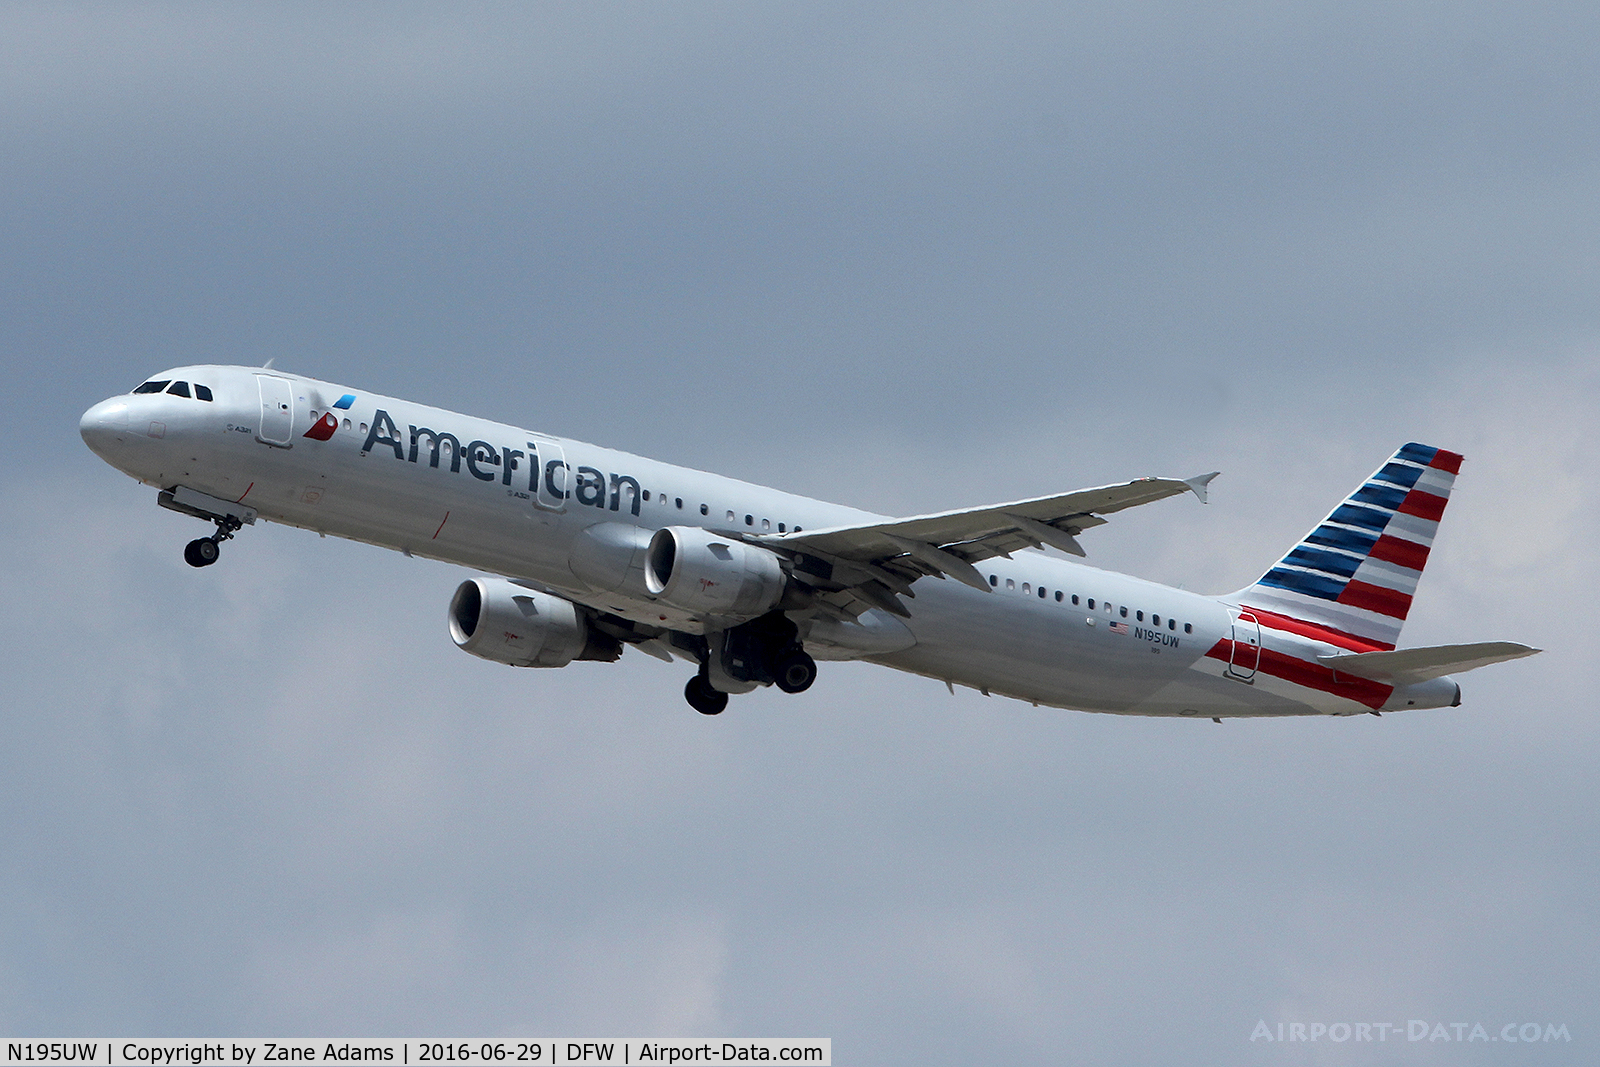 N195UW, 2008 Airbus A321-211 C/N 3633, American Airlines departing DFW